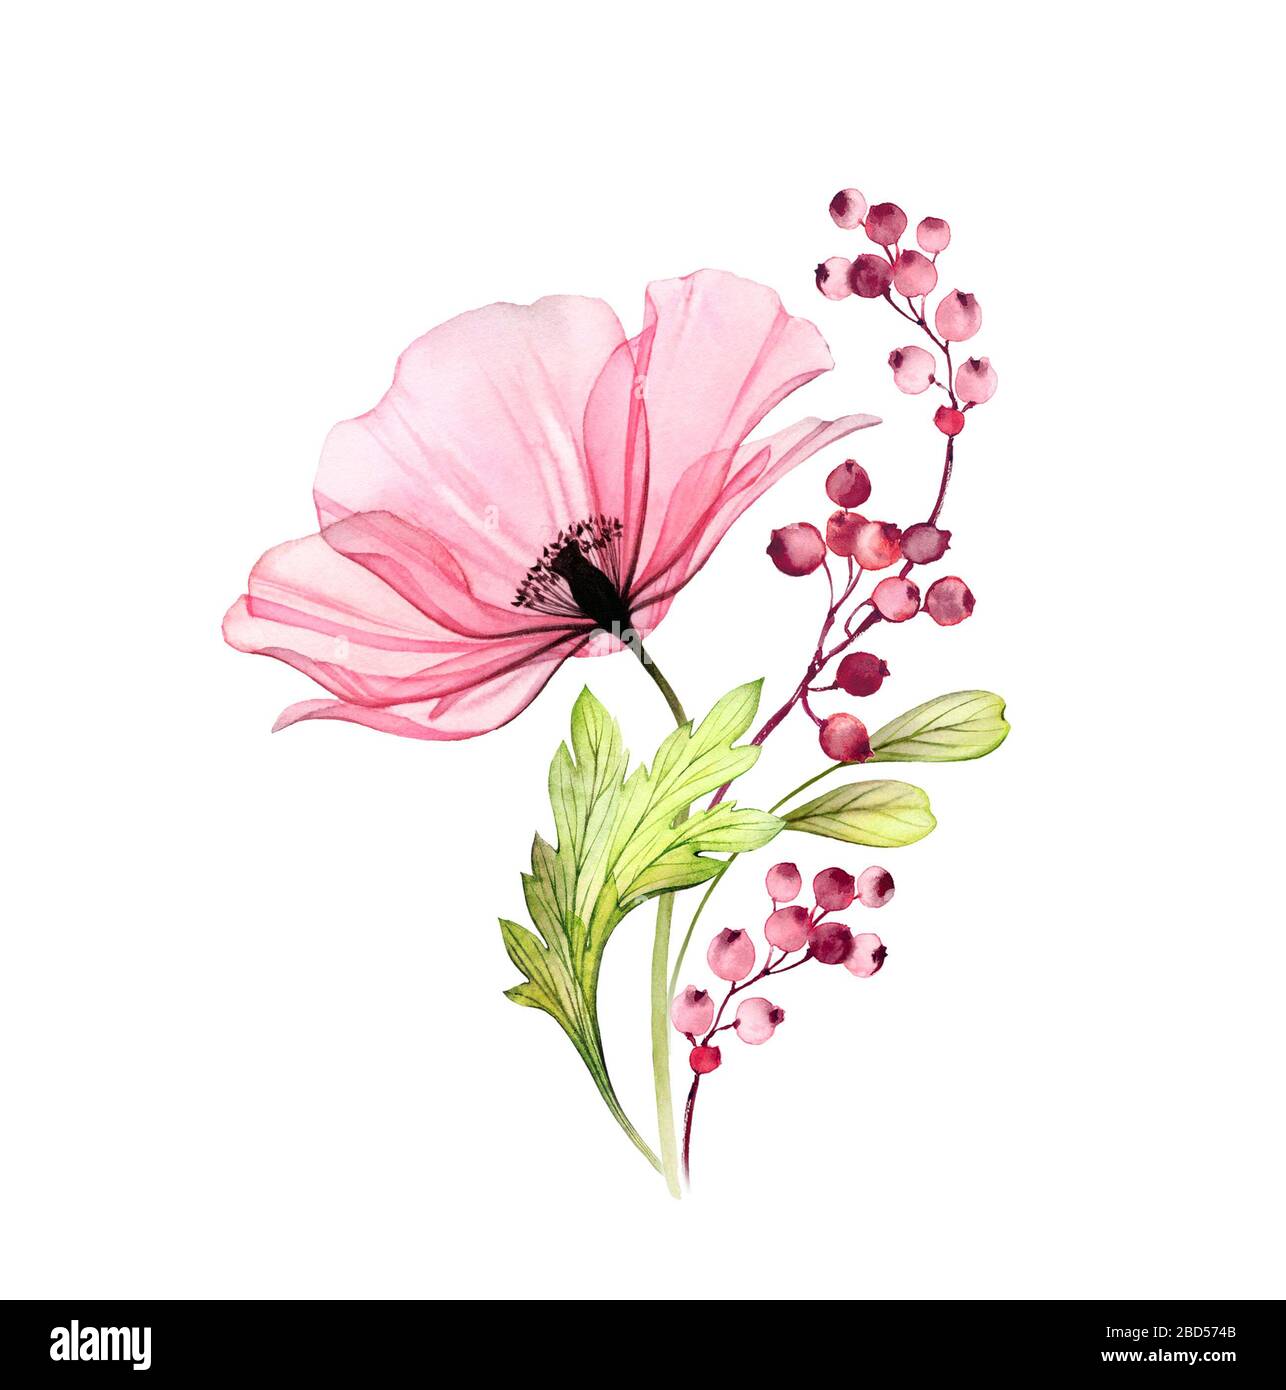 Acquerello bouquet di rose. Grande fiore rosa con foglie e bacche isolato su bianco. Opere d'arte dipinte a mano con petali dettagliati. Illustrazione botanica Foto Stock